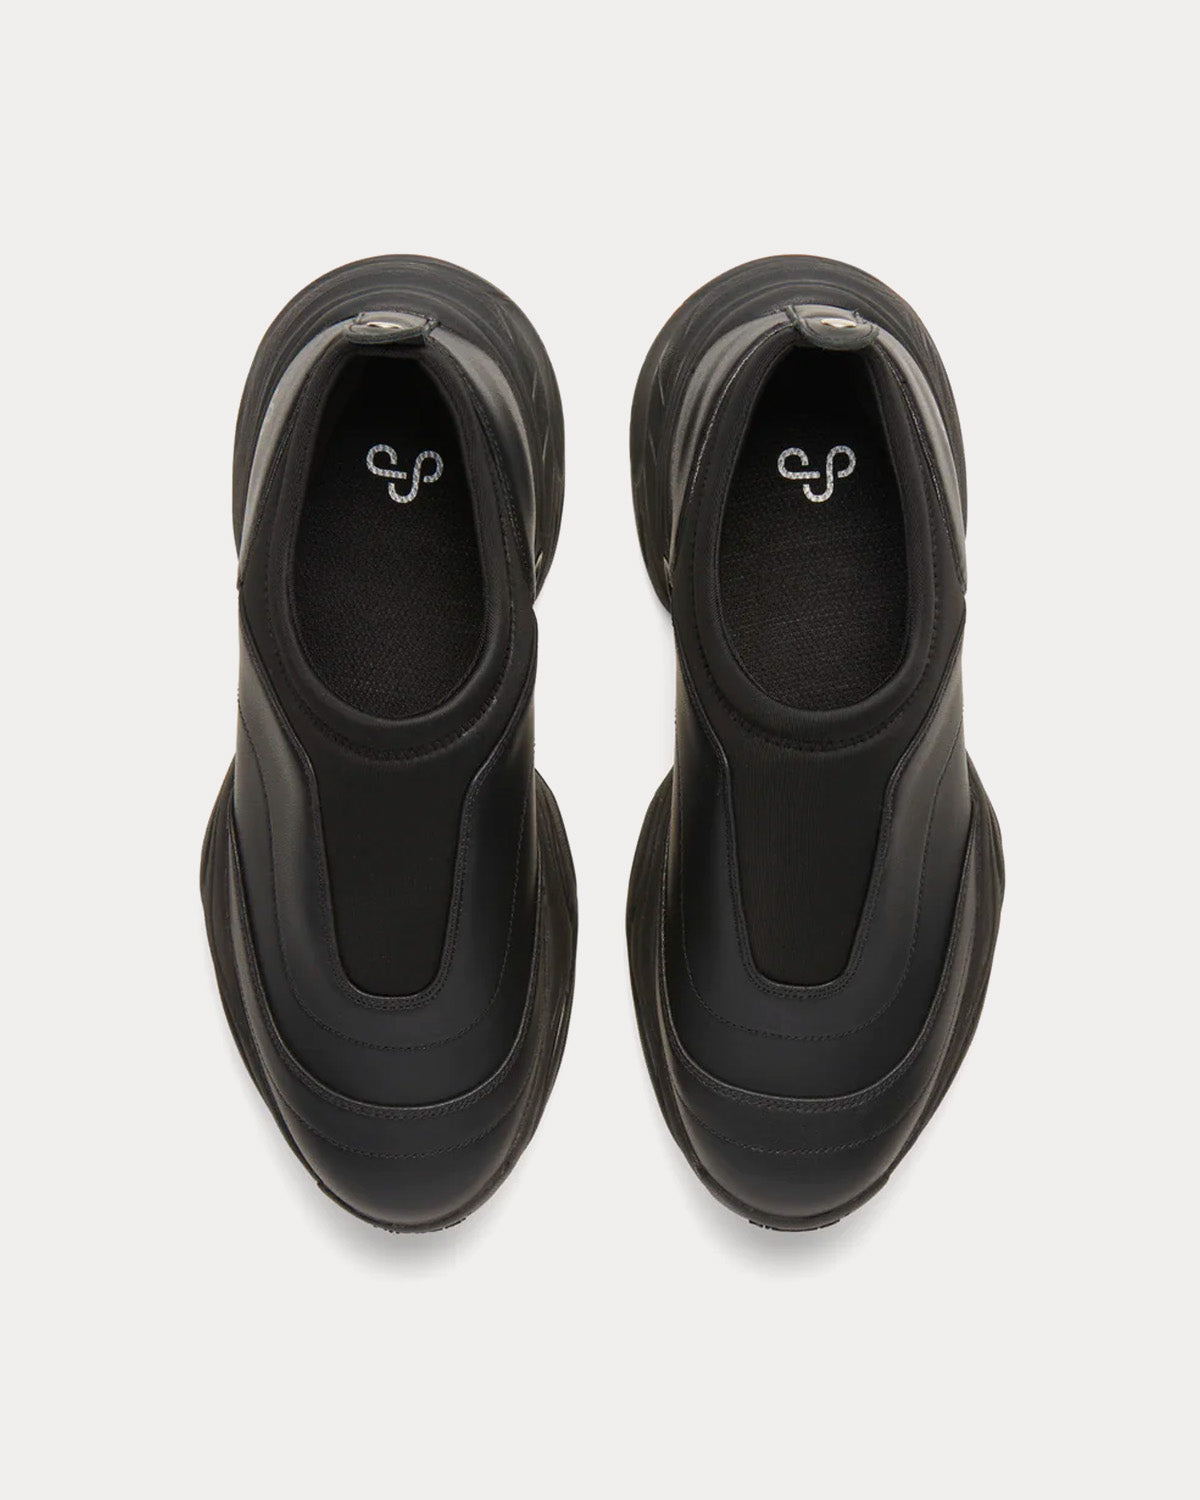 OAO - Wynd Black Slip On Sneakers